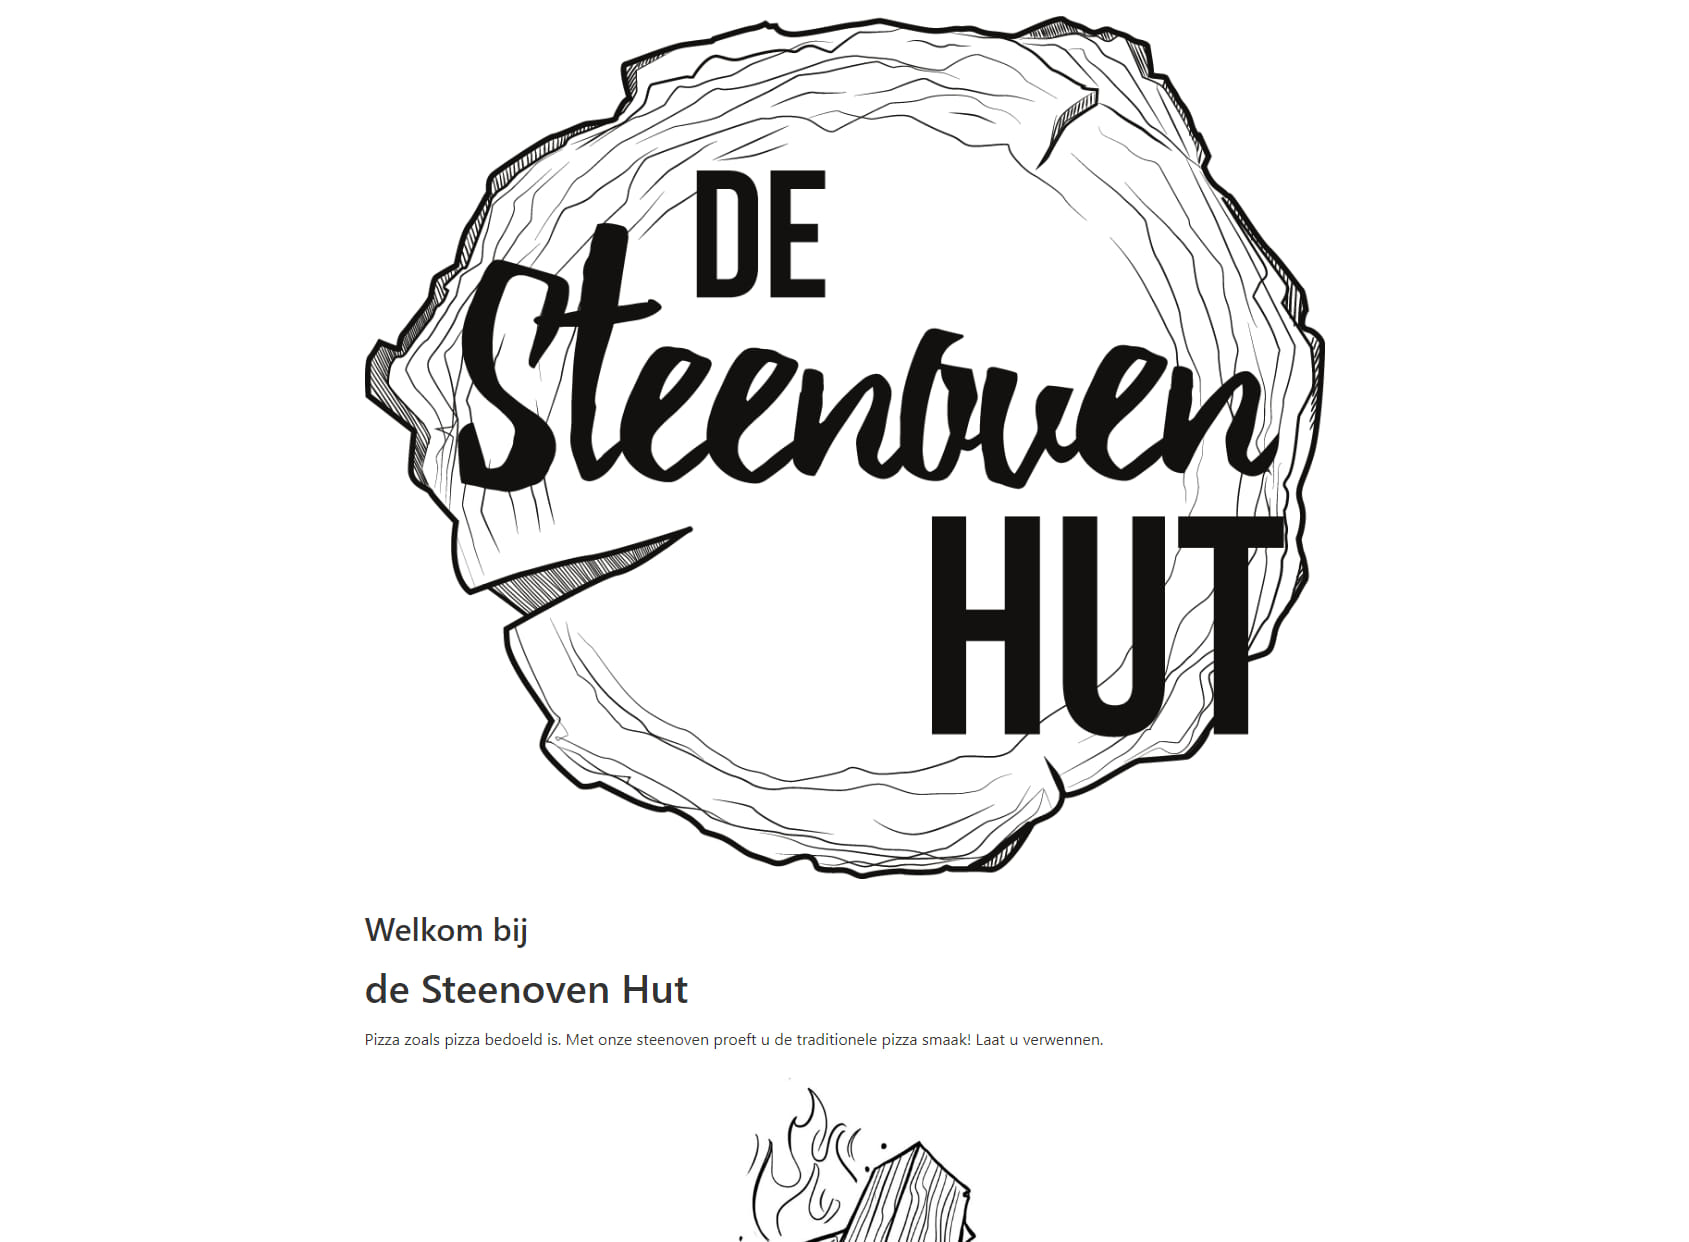 De Steenoven Hut